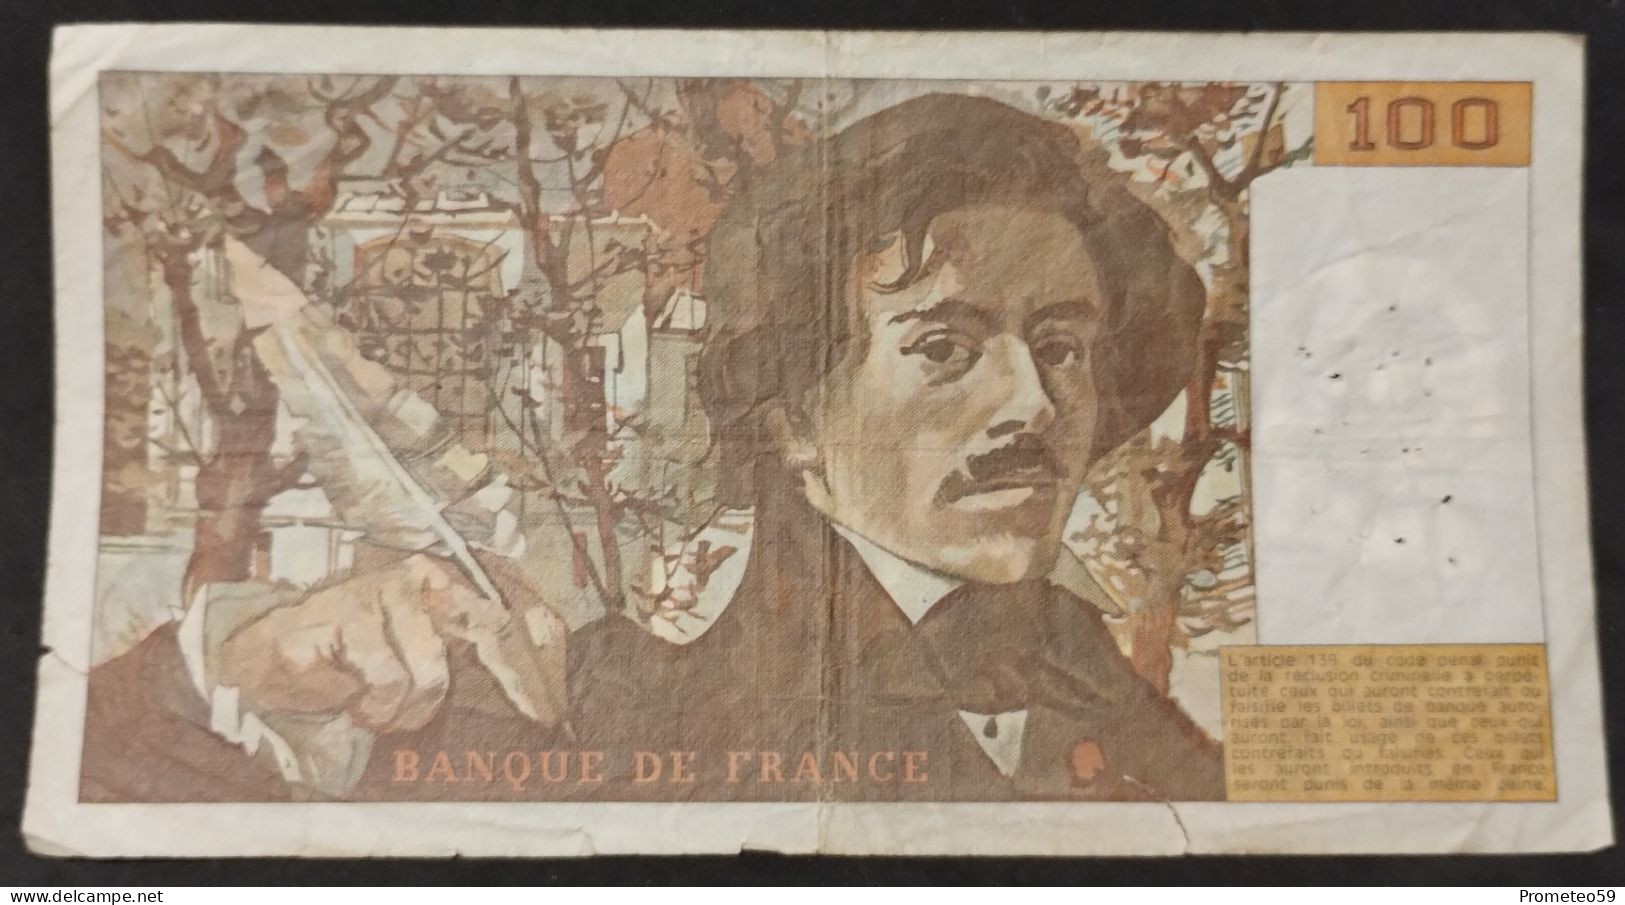 Francia – Billete Banknote De 100 Francs – 1985 - 100 F 1978-1995 ''Delacroix''